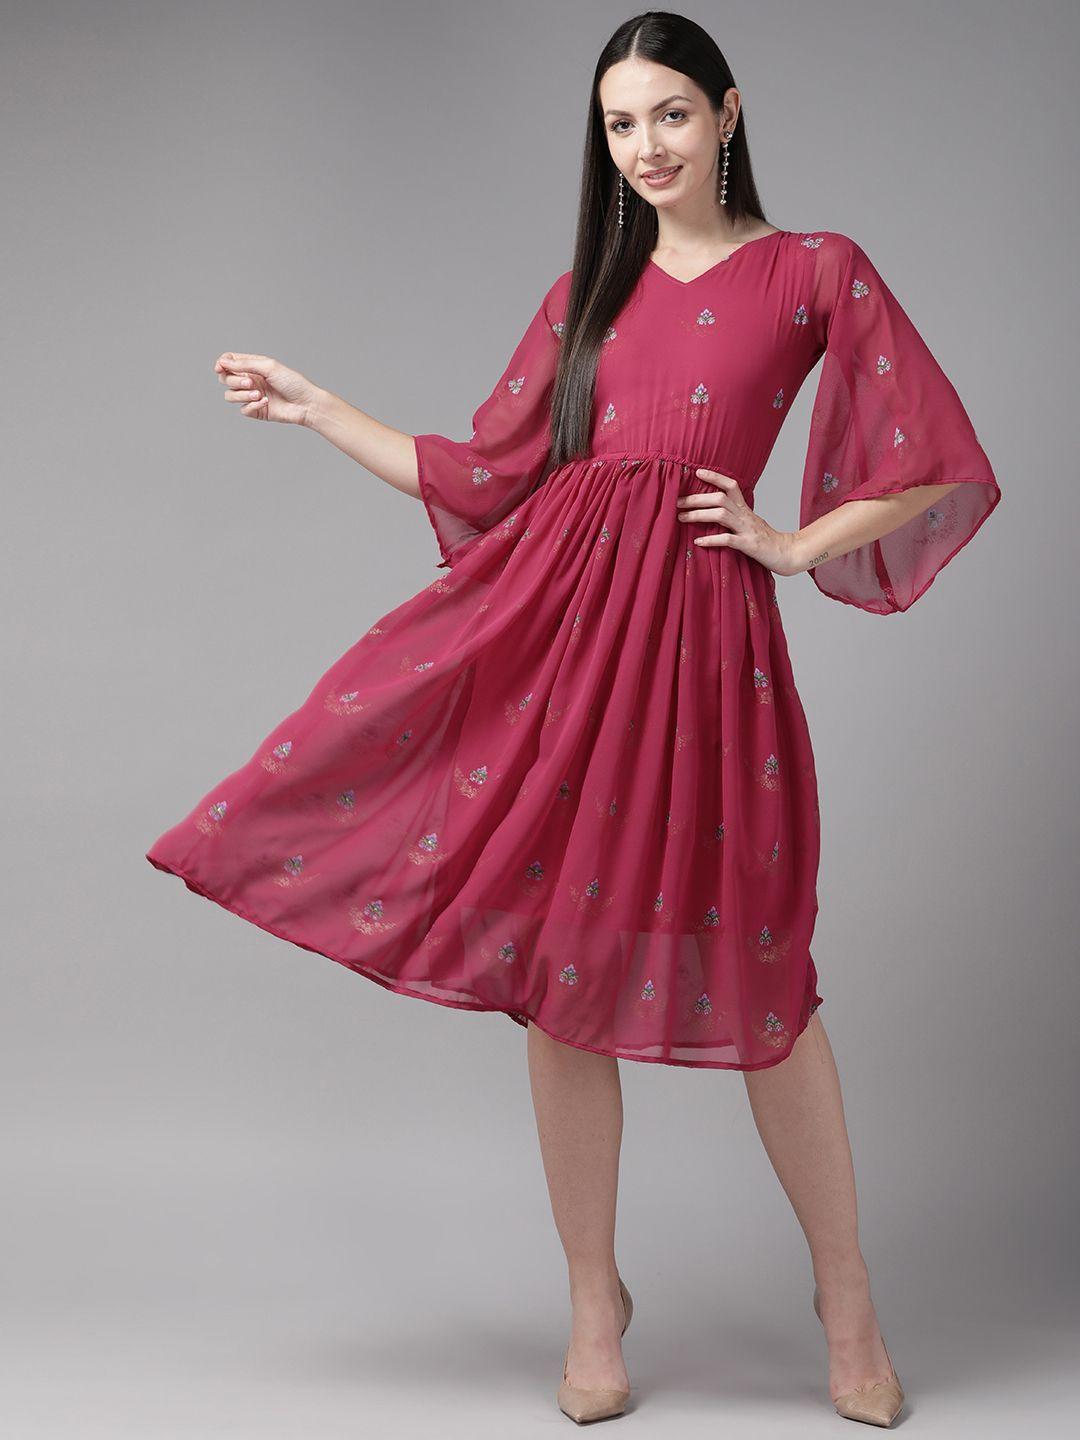 aarika-pink-floral-georgette-mini-dress